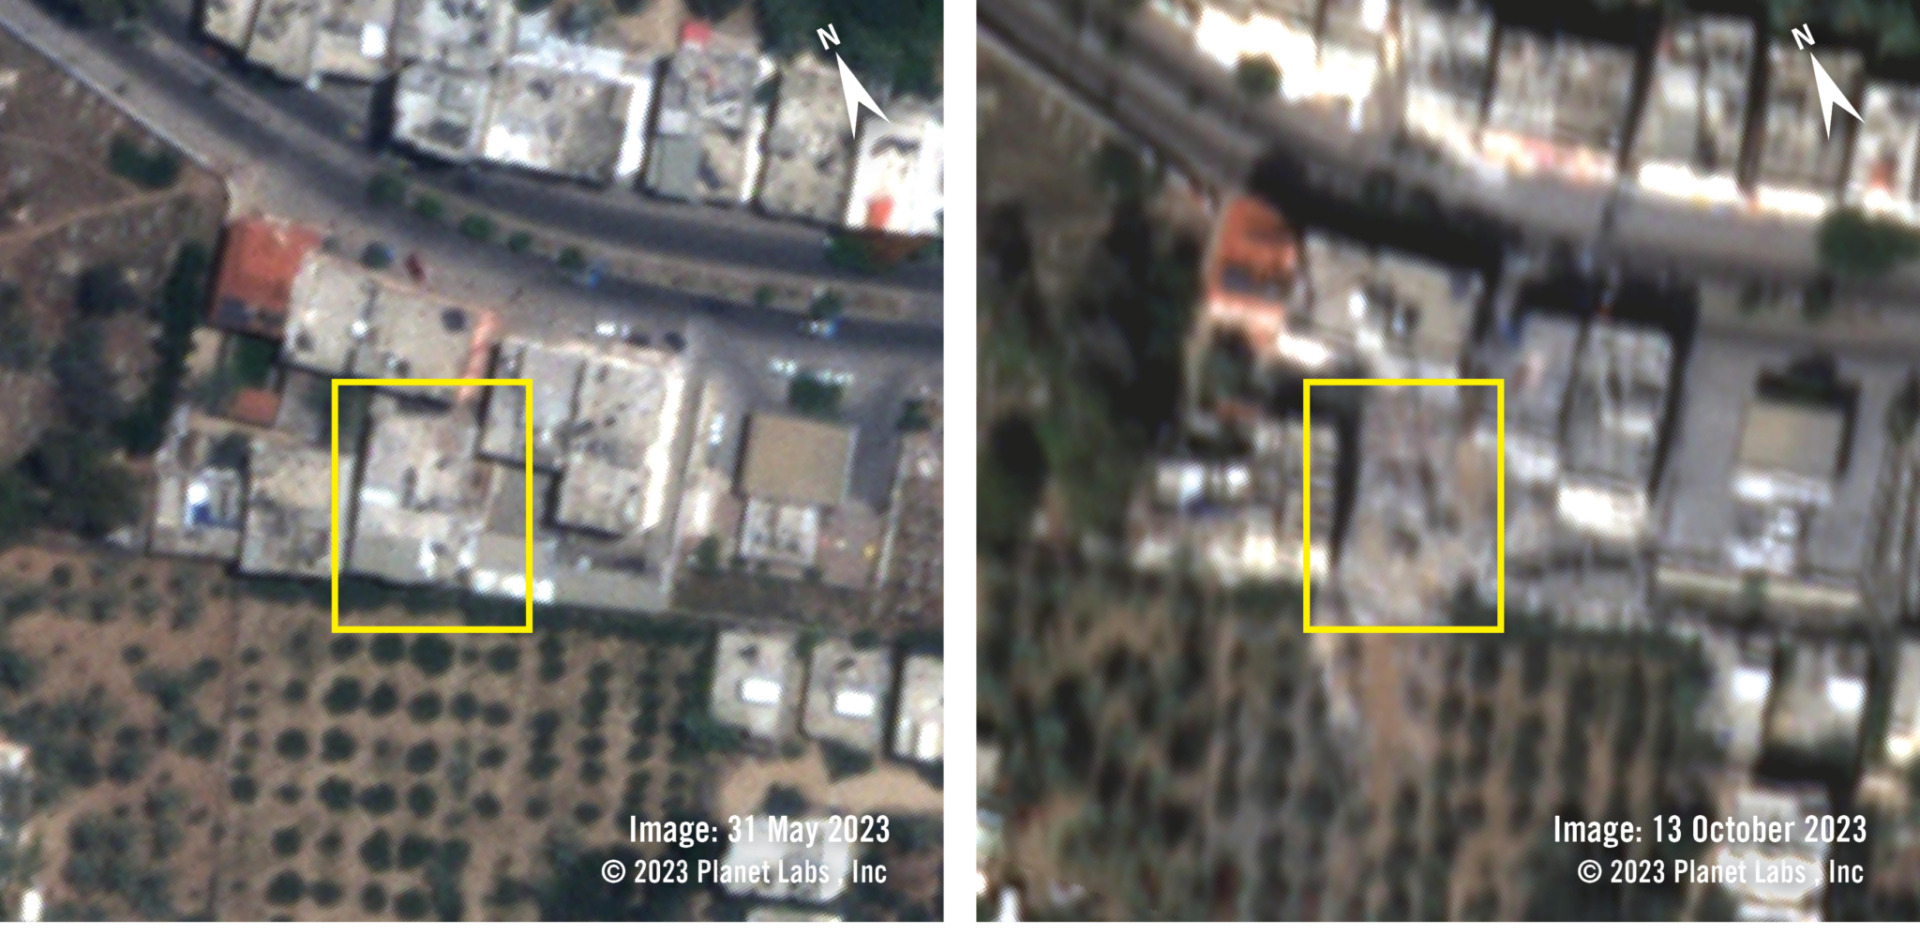 左圖是2023年5月31日的衛星影像，顯示的是遭炸毀前的樣子。右圖為2023年10月13日，衛星影像顯示遭炸毀的區域，其他低解析度（未呈現出來）的圖證實空襲發生時間在10月10日和10月13日之間。